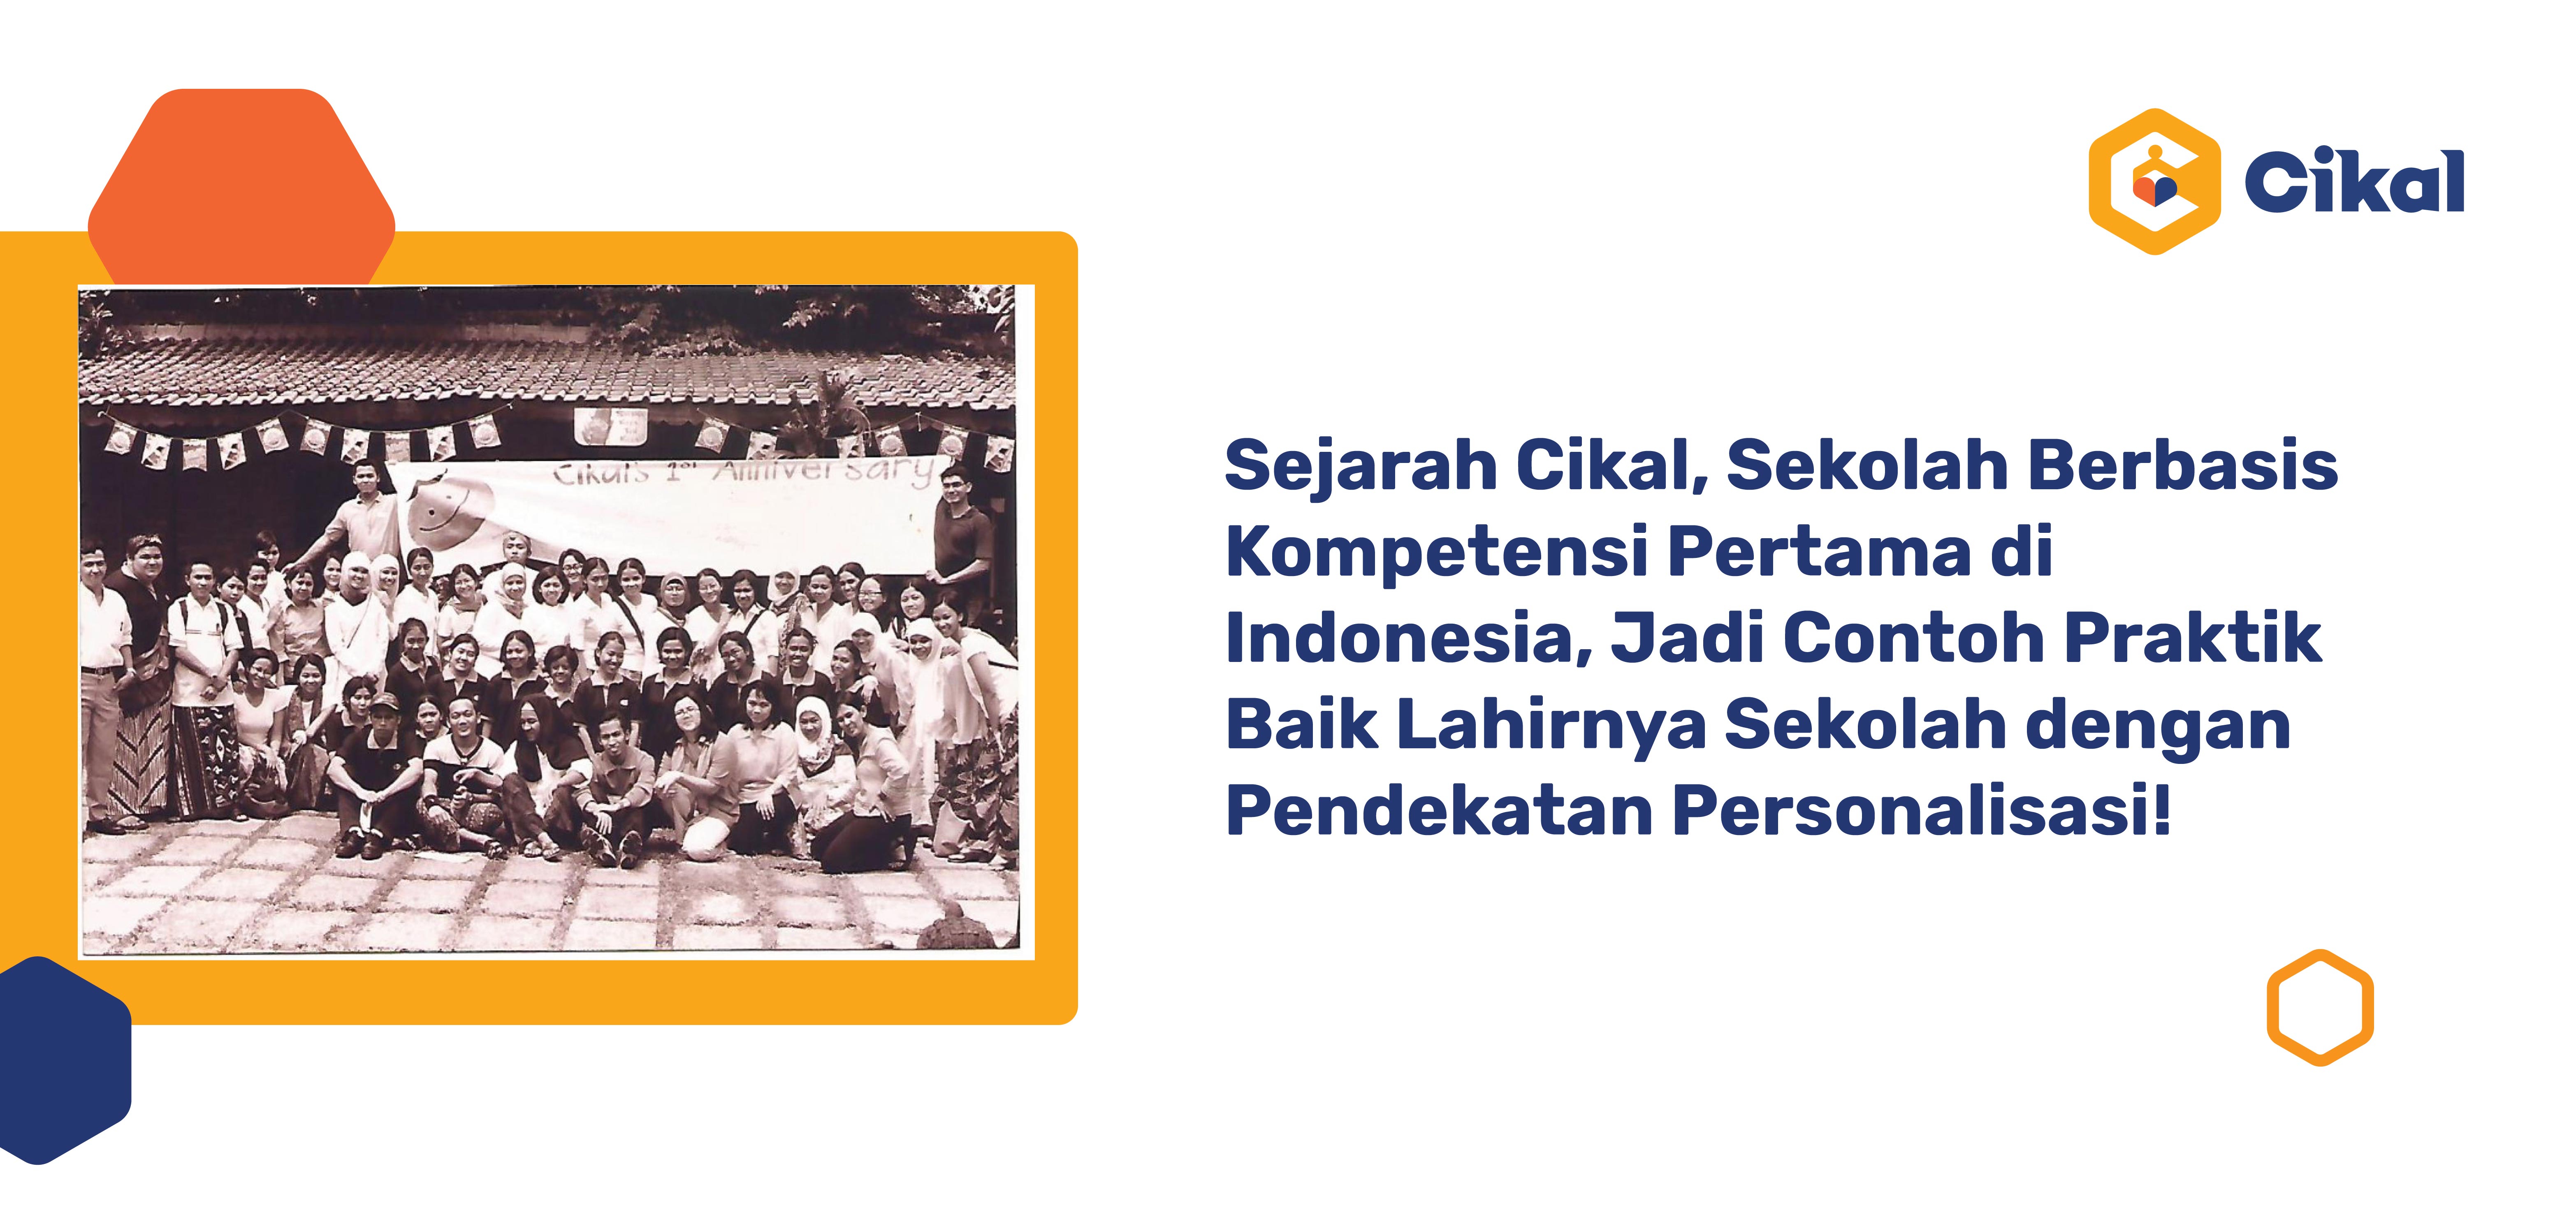 Sejarah Cikal, Sekolah Berbasis Kompetensi Pertama di Indonesia, Jadi Contoh Praktik Baik Lahirnya Sekolah dengan Pendekatan Personalisasi!